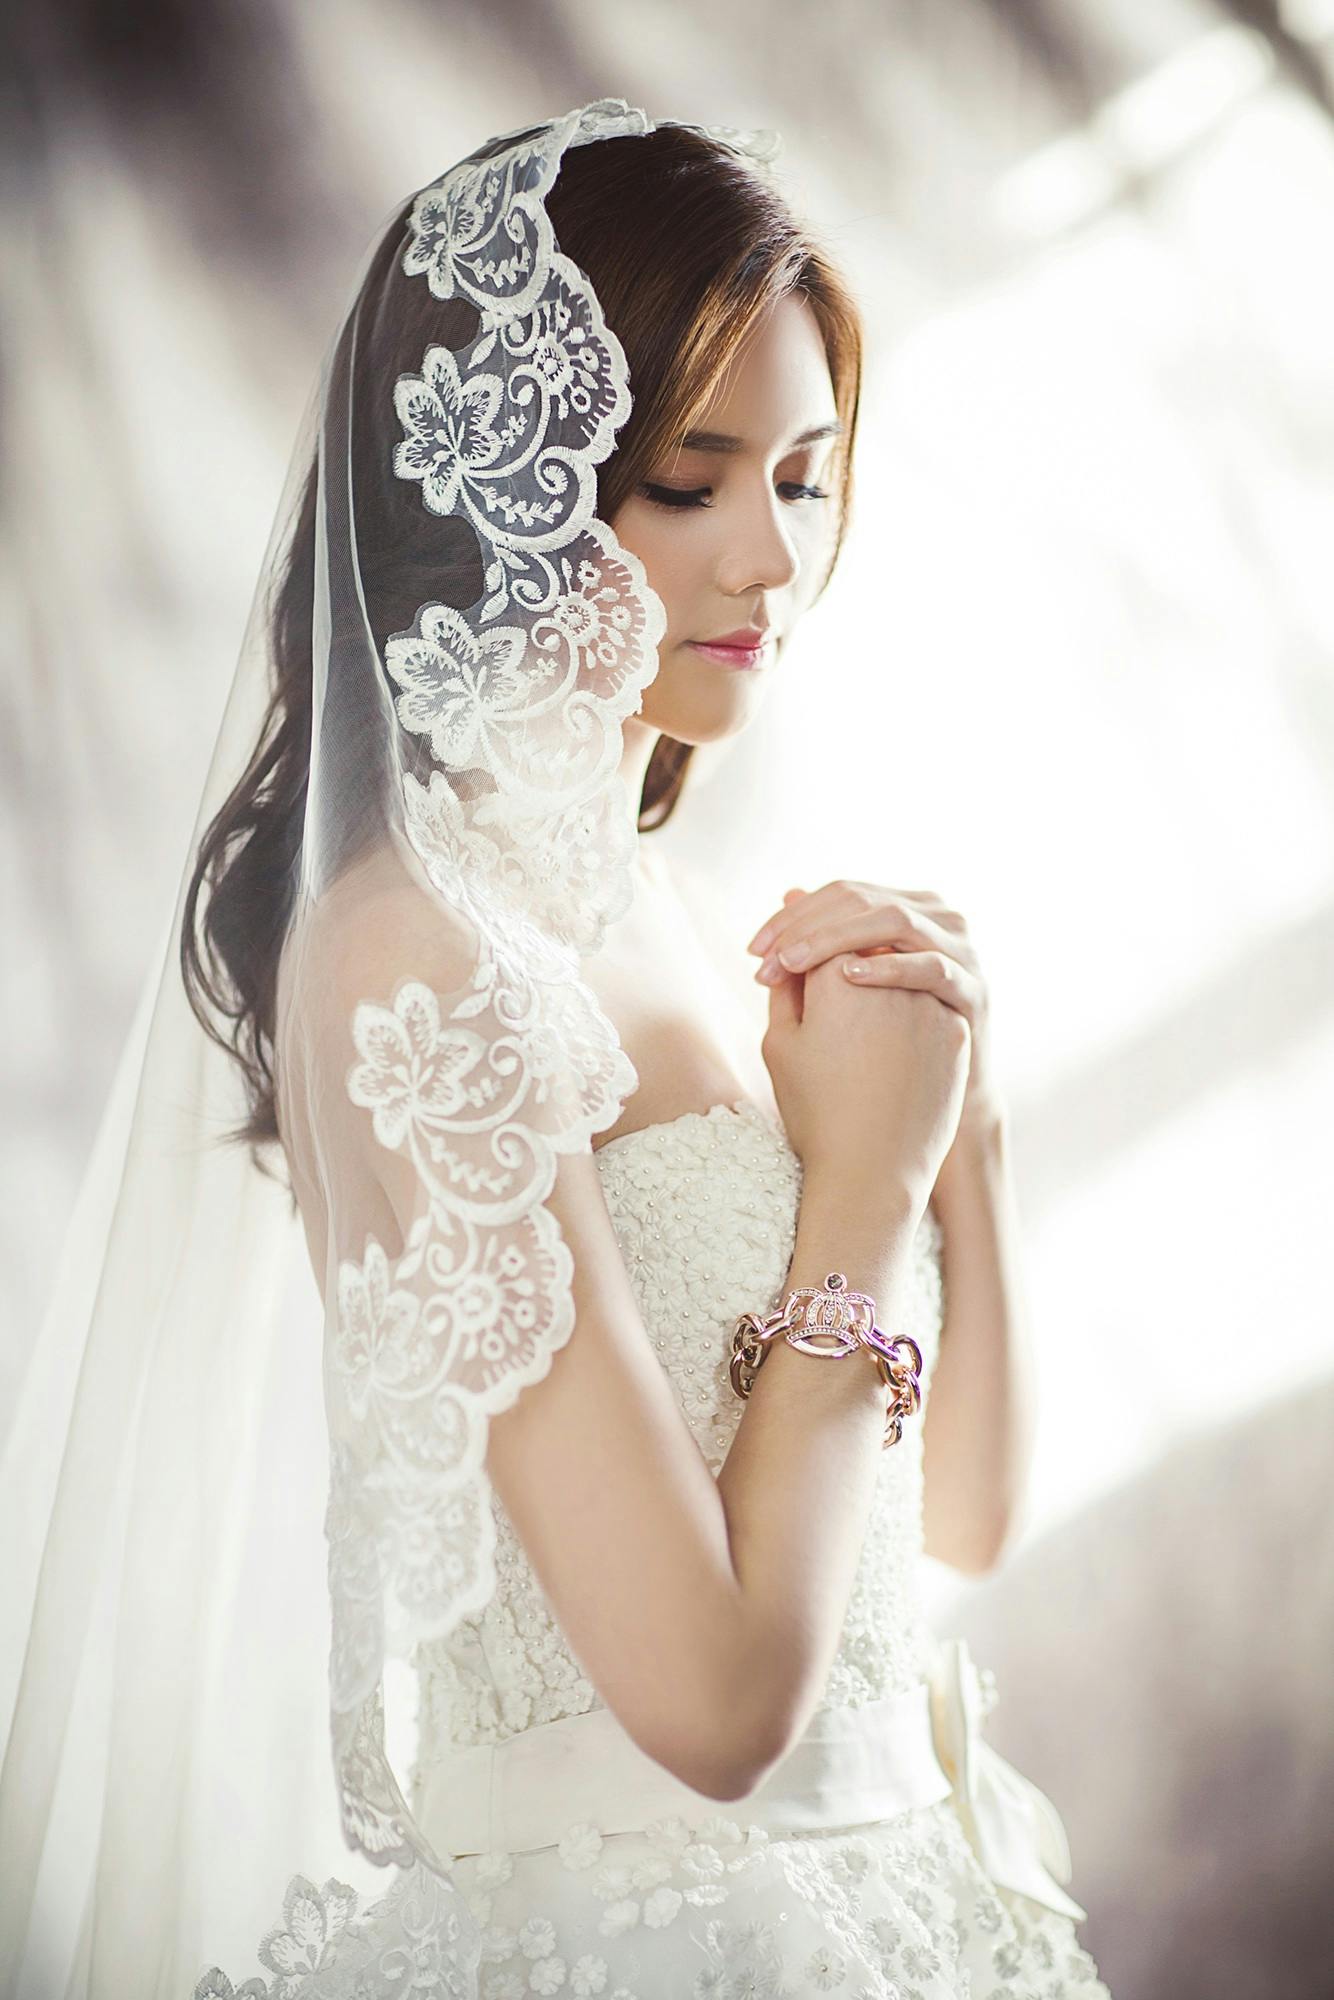 Una novia con su vestido de novia | Fuente: Pexels